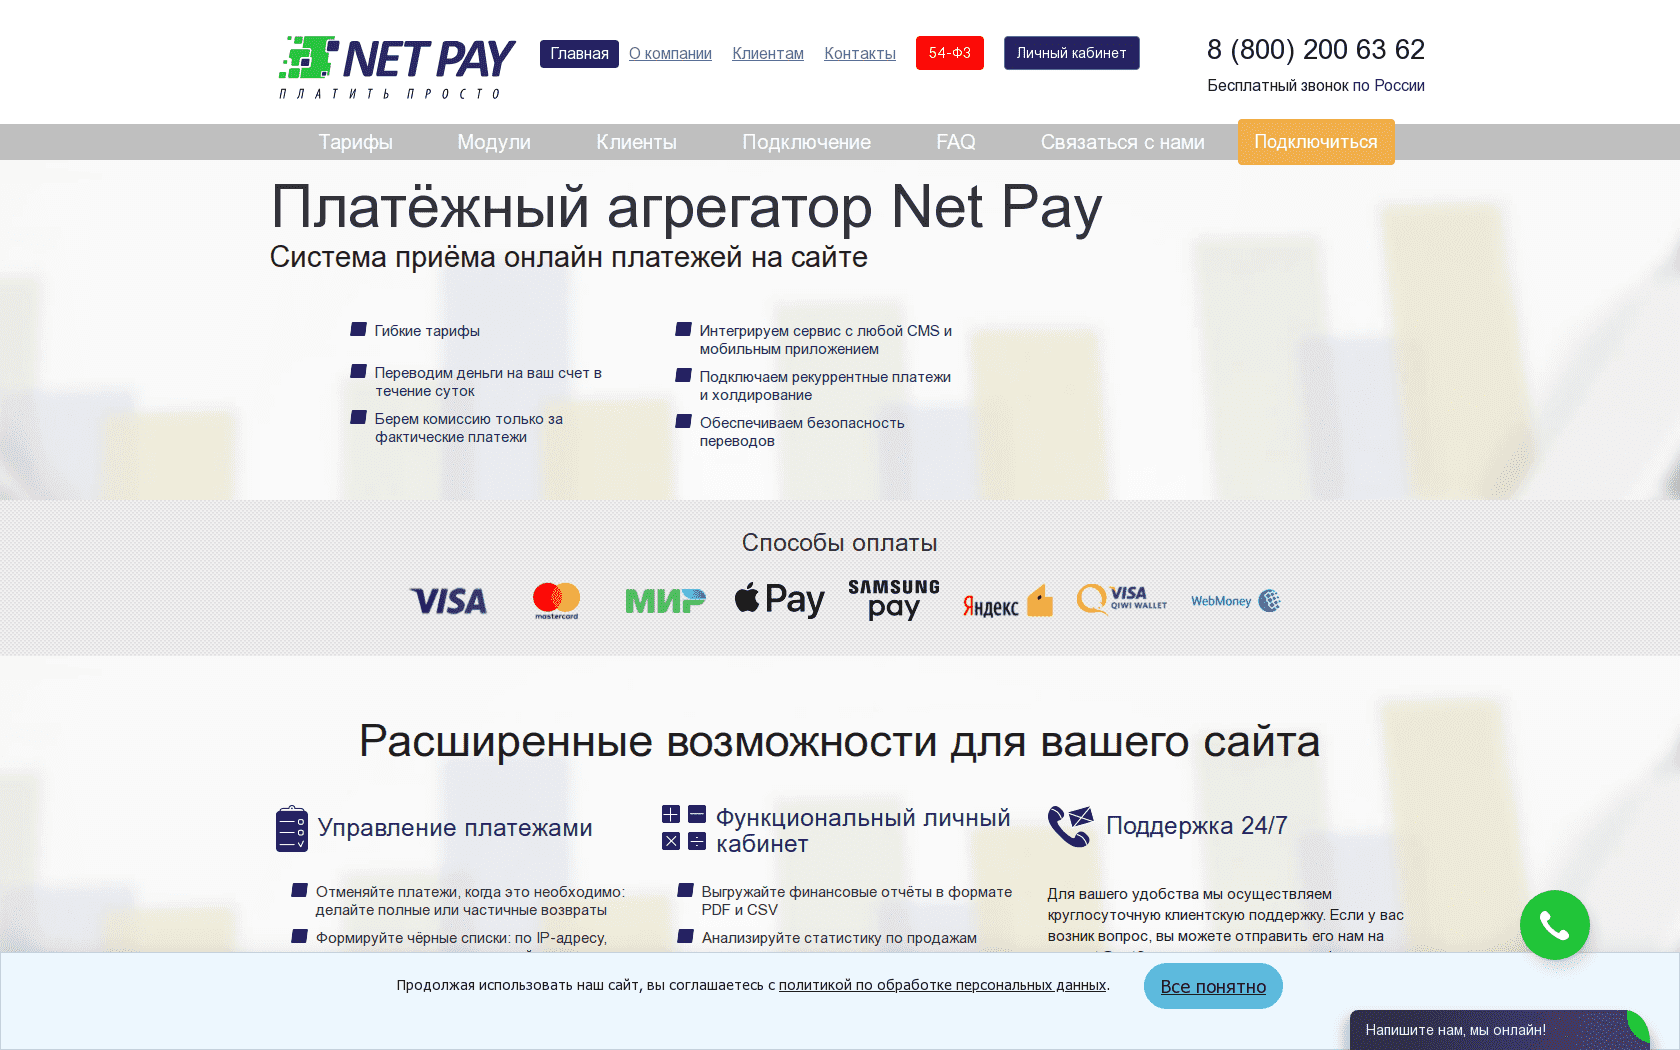 Как сэкономить на эквайринге и повысить лояльность покупателей? | retail.ru